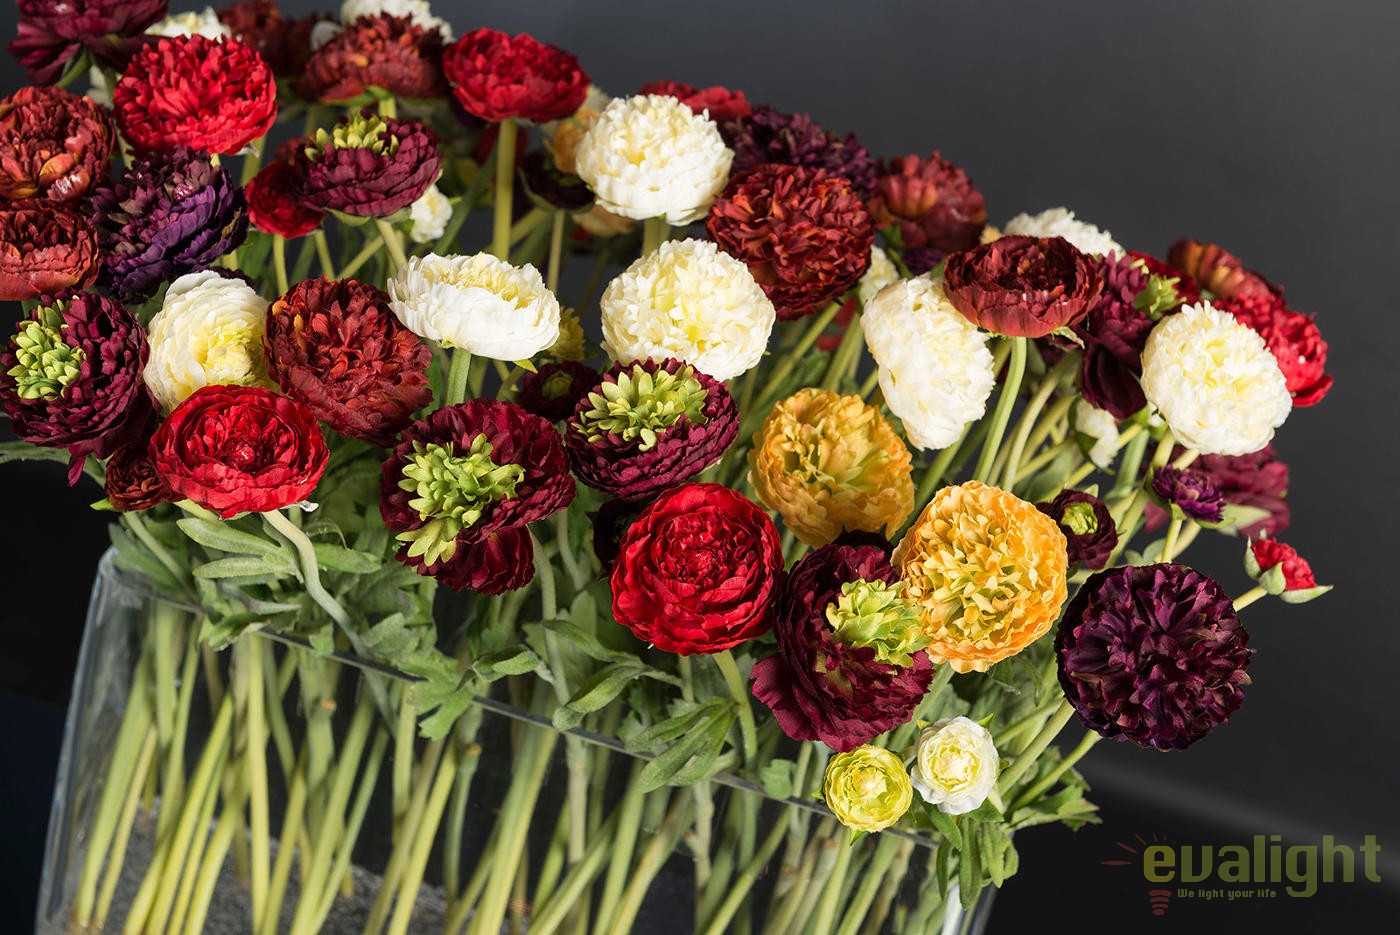 Polite manual Care Aranjament floral elegant, decor pentru interioare de LUX, bujori  multicolori LUGANO 1141844.01 - Corpuri de iluminat, lustre, aplice